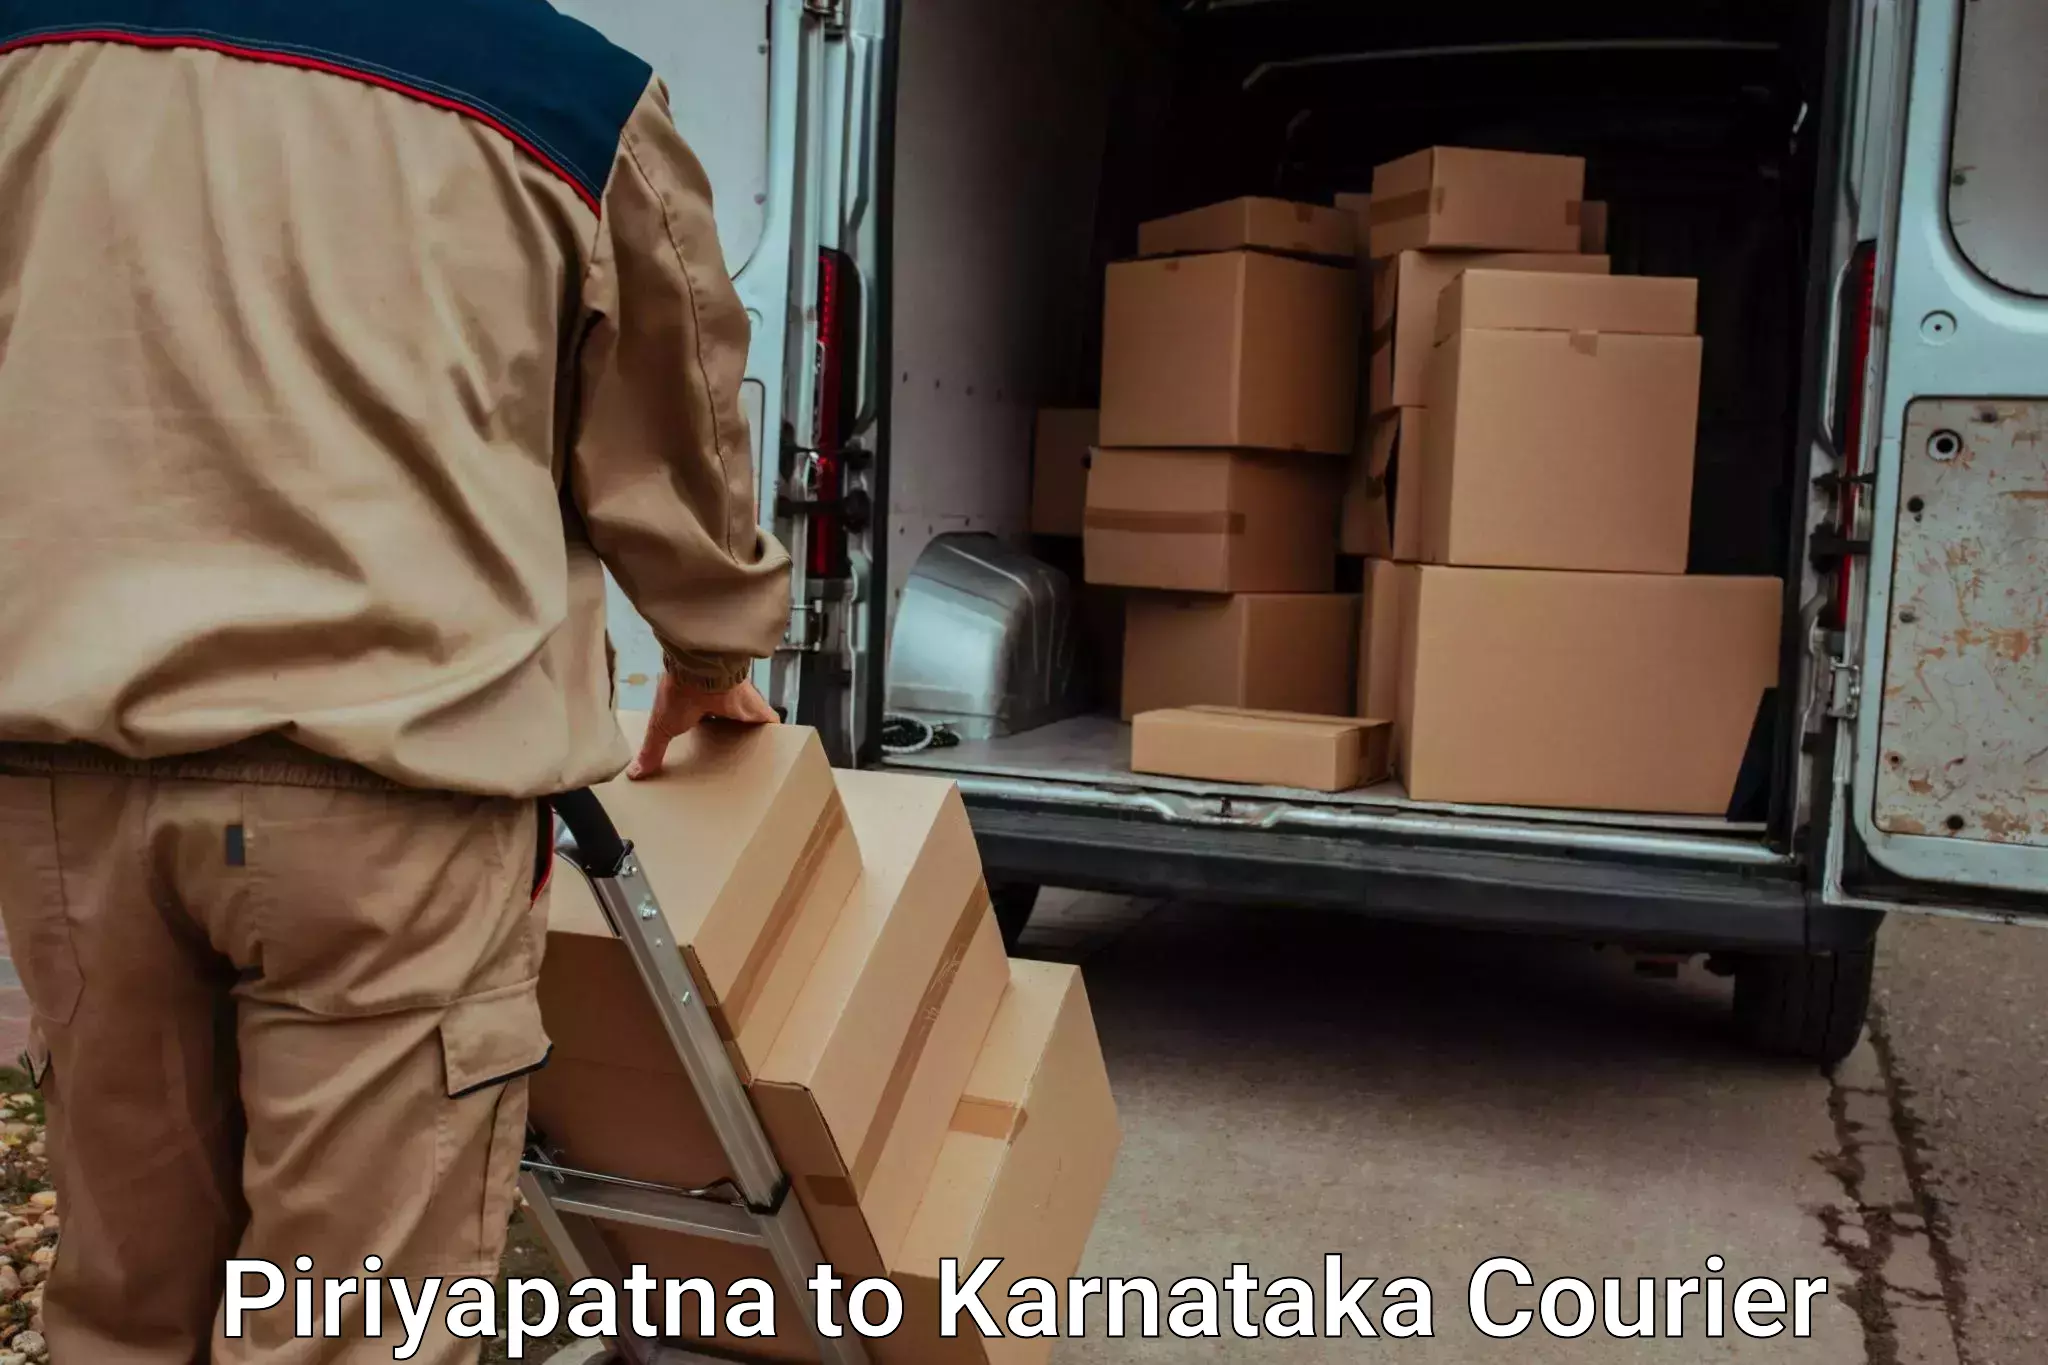 Furniture transport service Piriyapatna to Arsikere